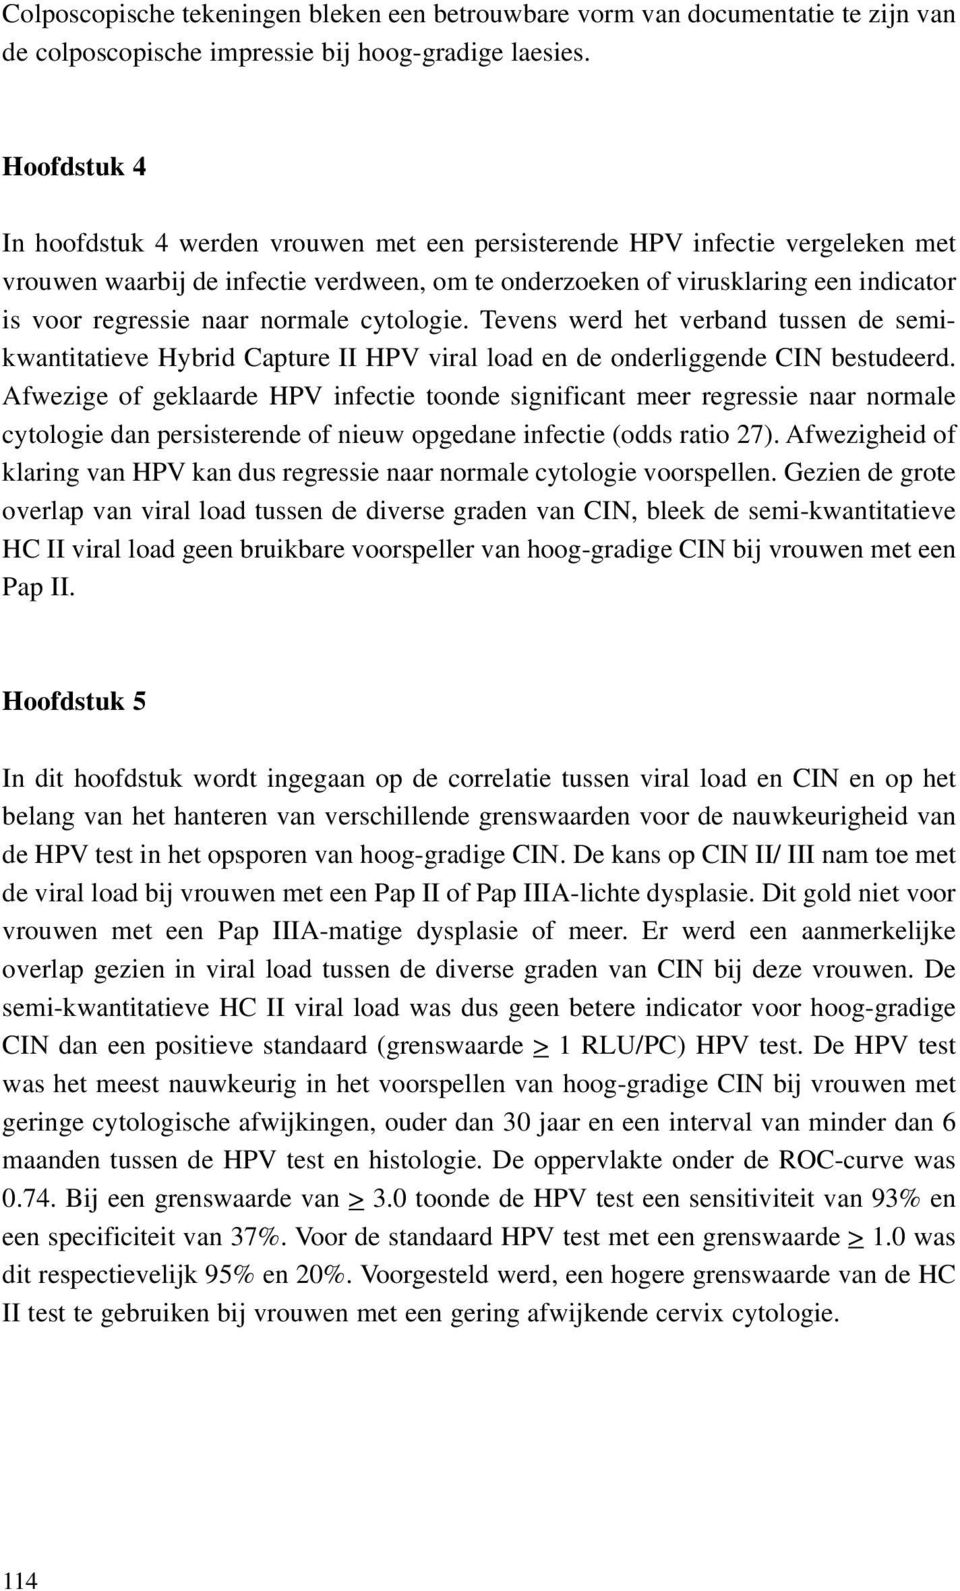 naar normale cytologie. Tevens werd het verband tussen de semikwantitatieve Hybrid Capture II HPV viral load en de onderliggende CIN bestudeerd.